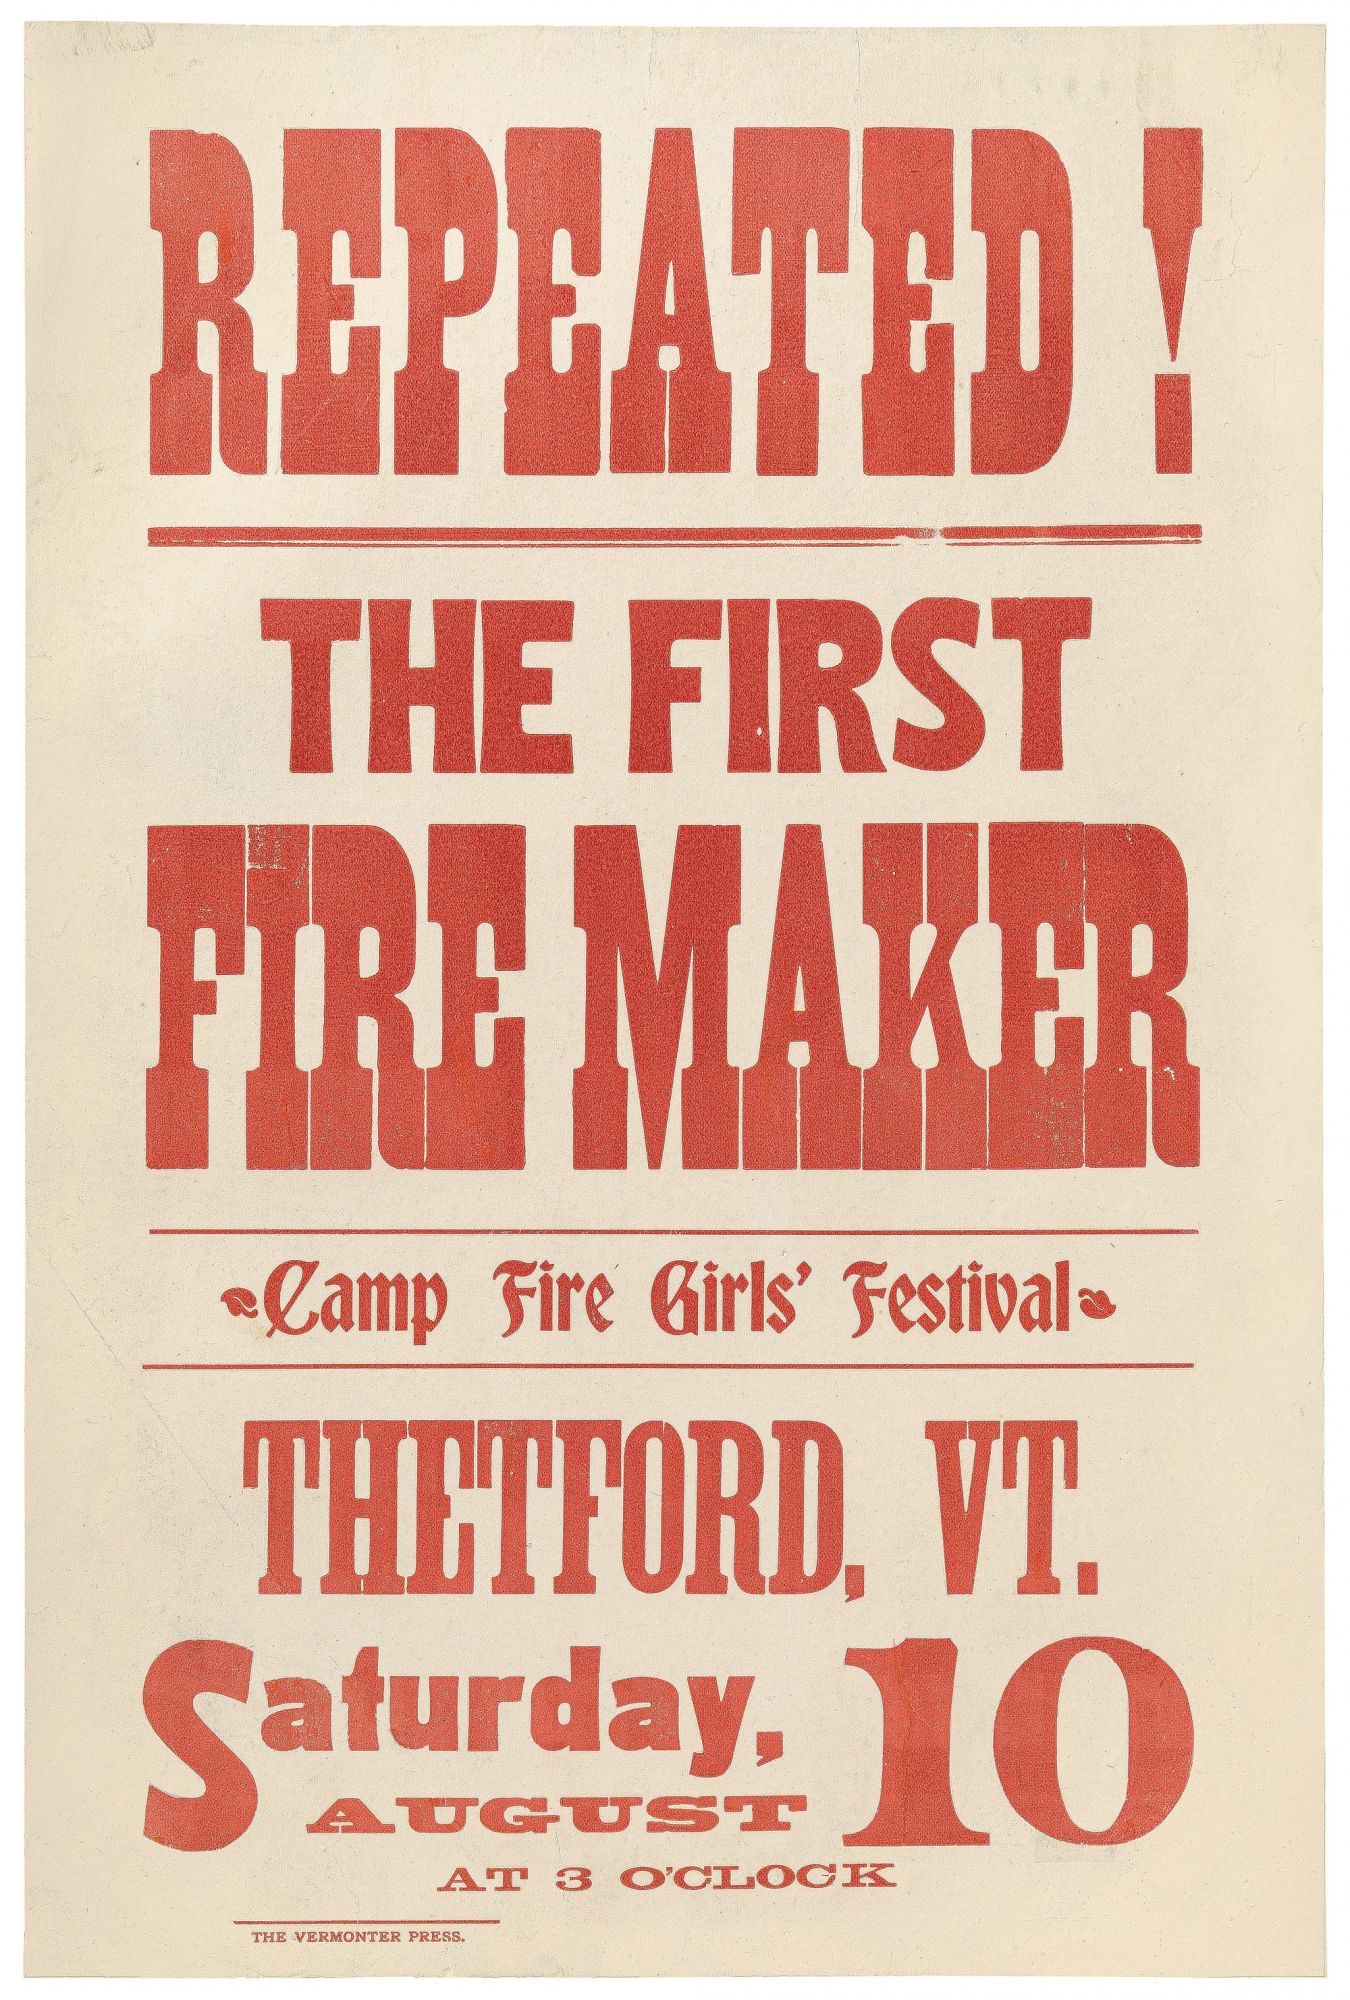 Thetford, Vermont - Wikipedia